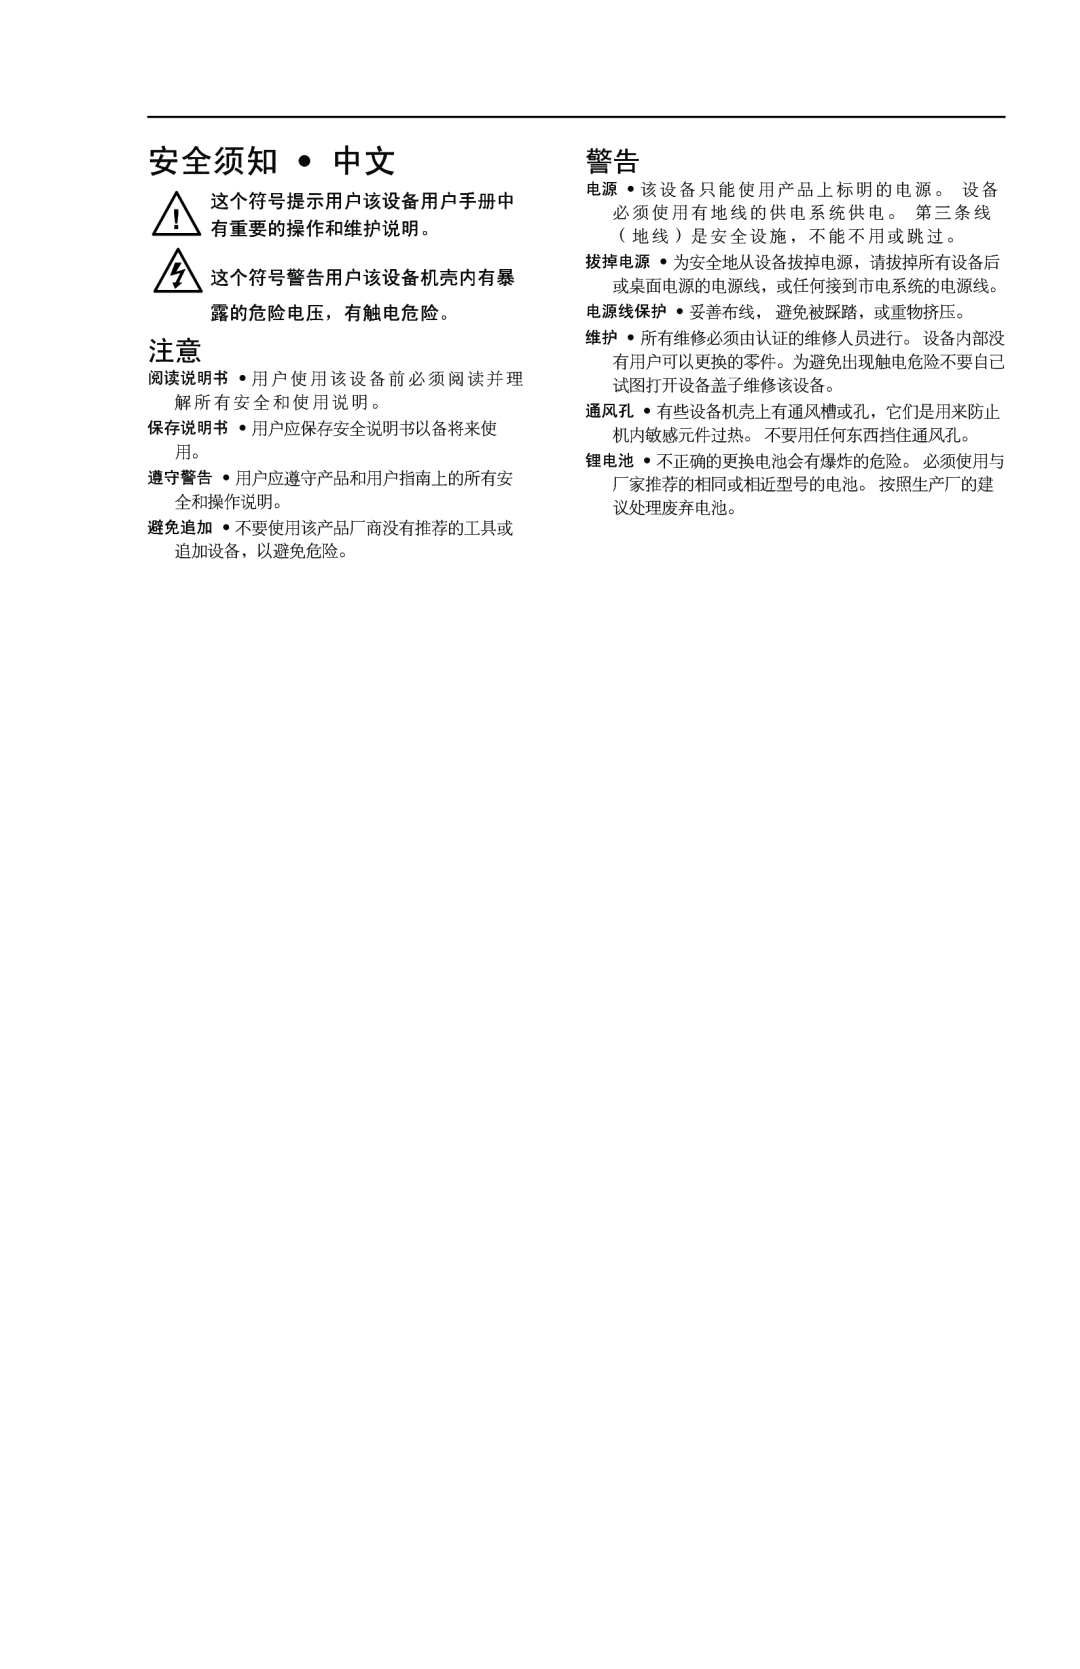 Extron electronic BBG 6 A J manual 安全须知 中文, 这个符号提示用户该设备用户手册中 有重要的操作和维护说明。 这个符号警告用户该设备机壳内有暴 露的危险电压，有触电危险。 